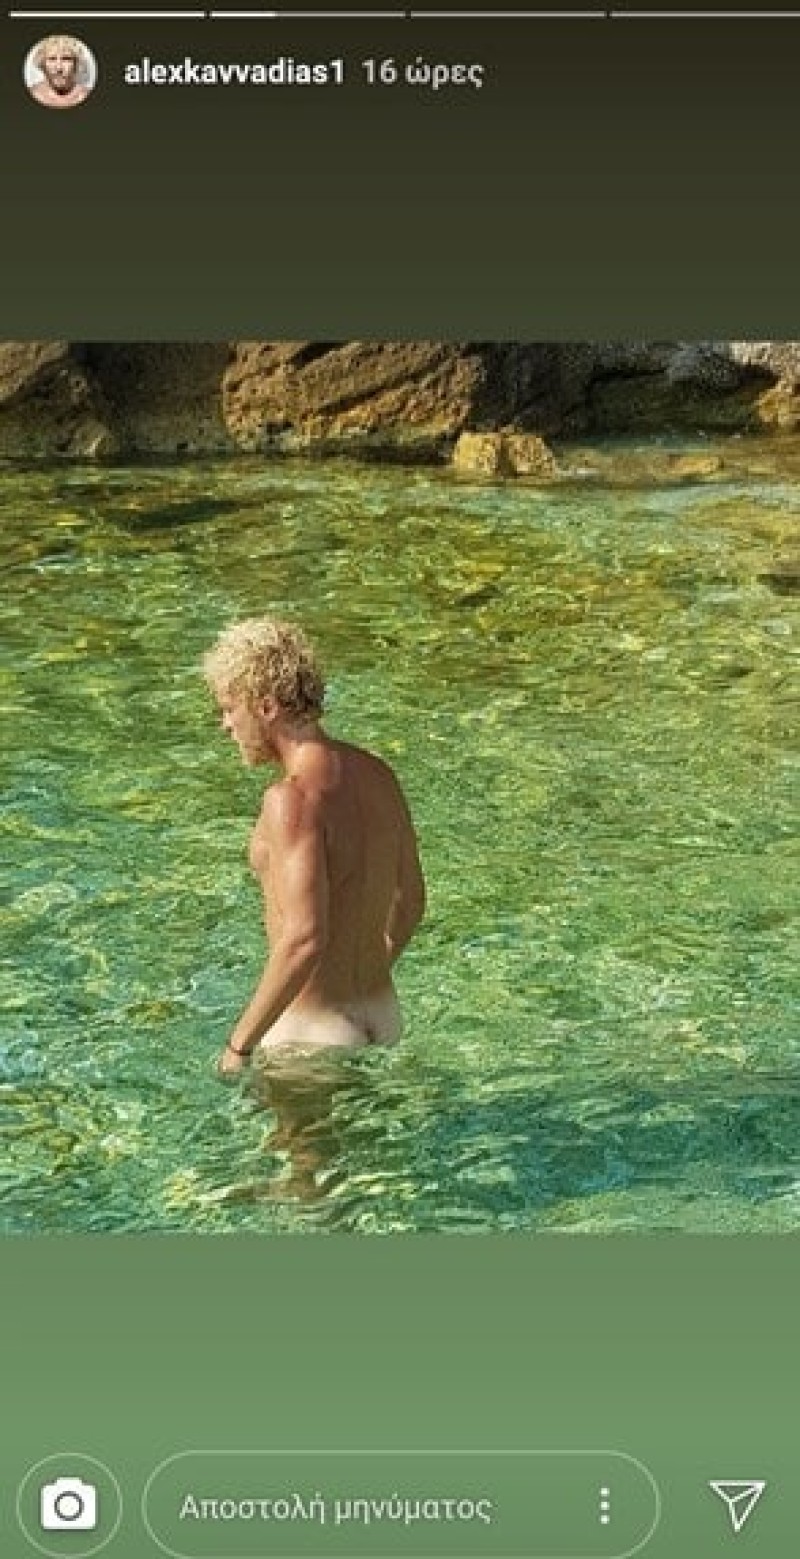 Έλληνας τραγουδιστής πήγε γυμνός για μπάνιο! Οι φωτογραφίες που σοκάρουν!